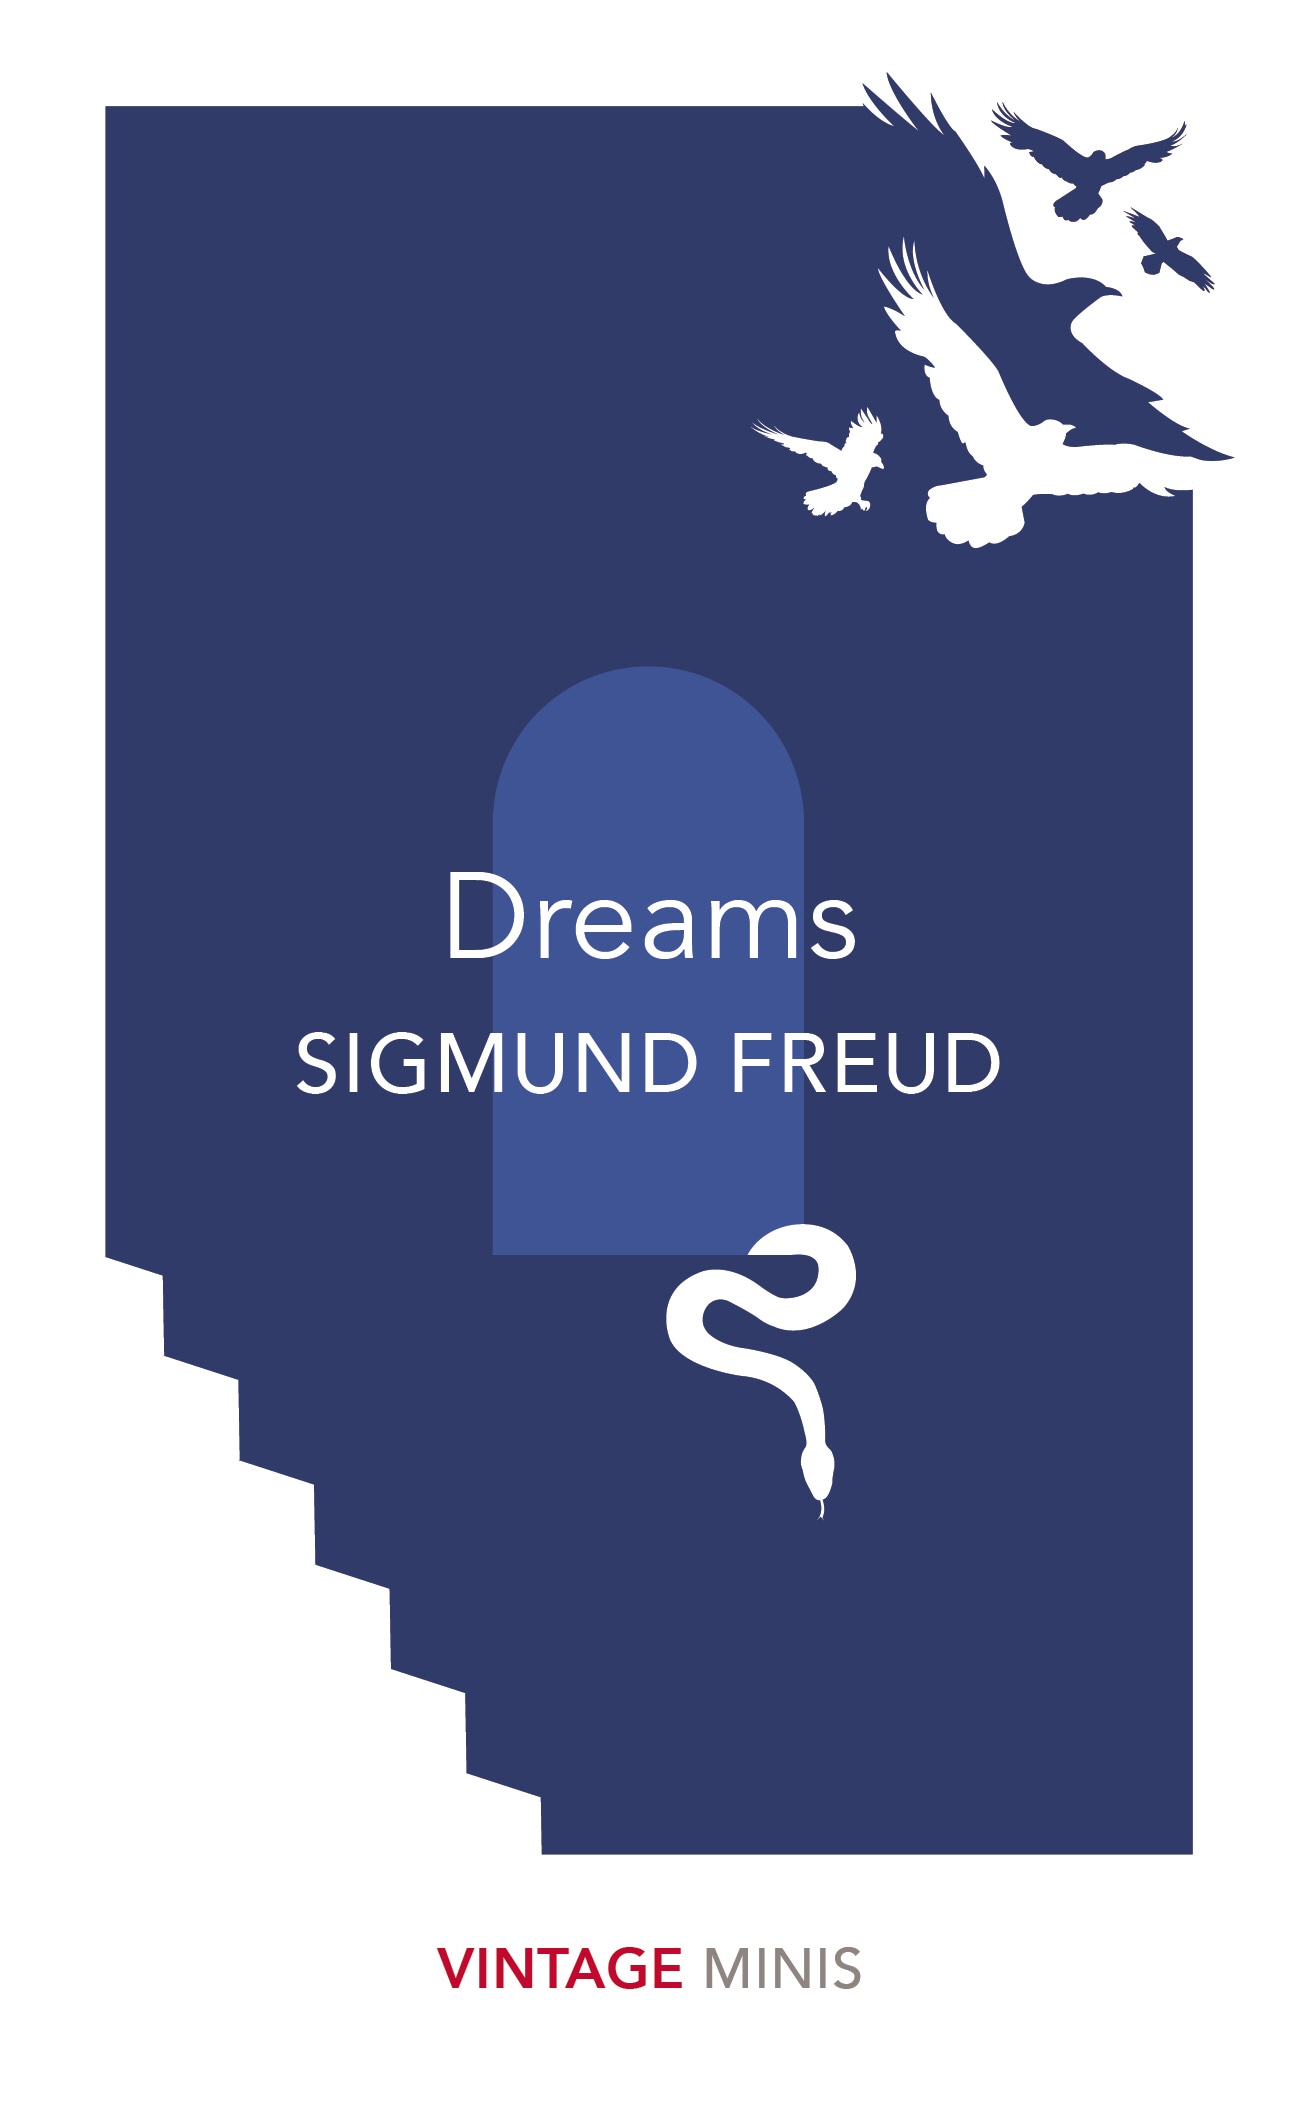 Book “Dreams” by Sigmund Freud — April 5, 2018